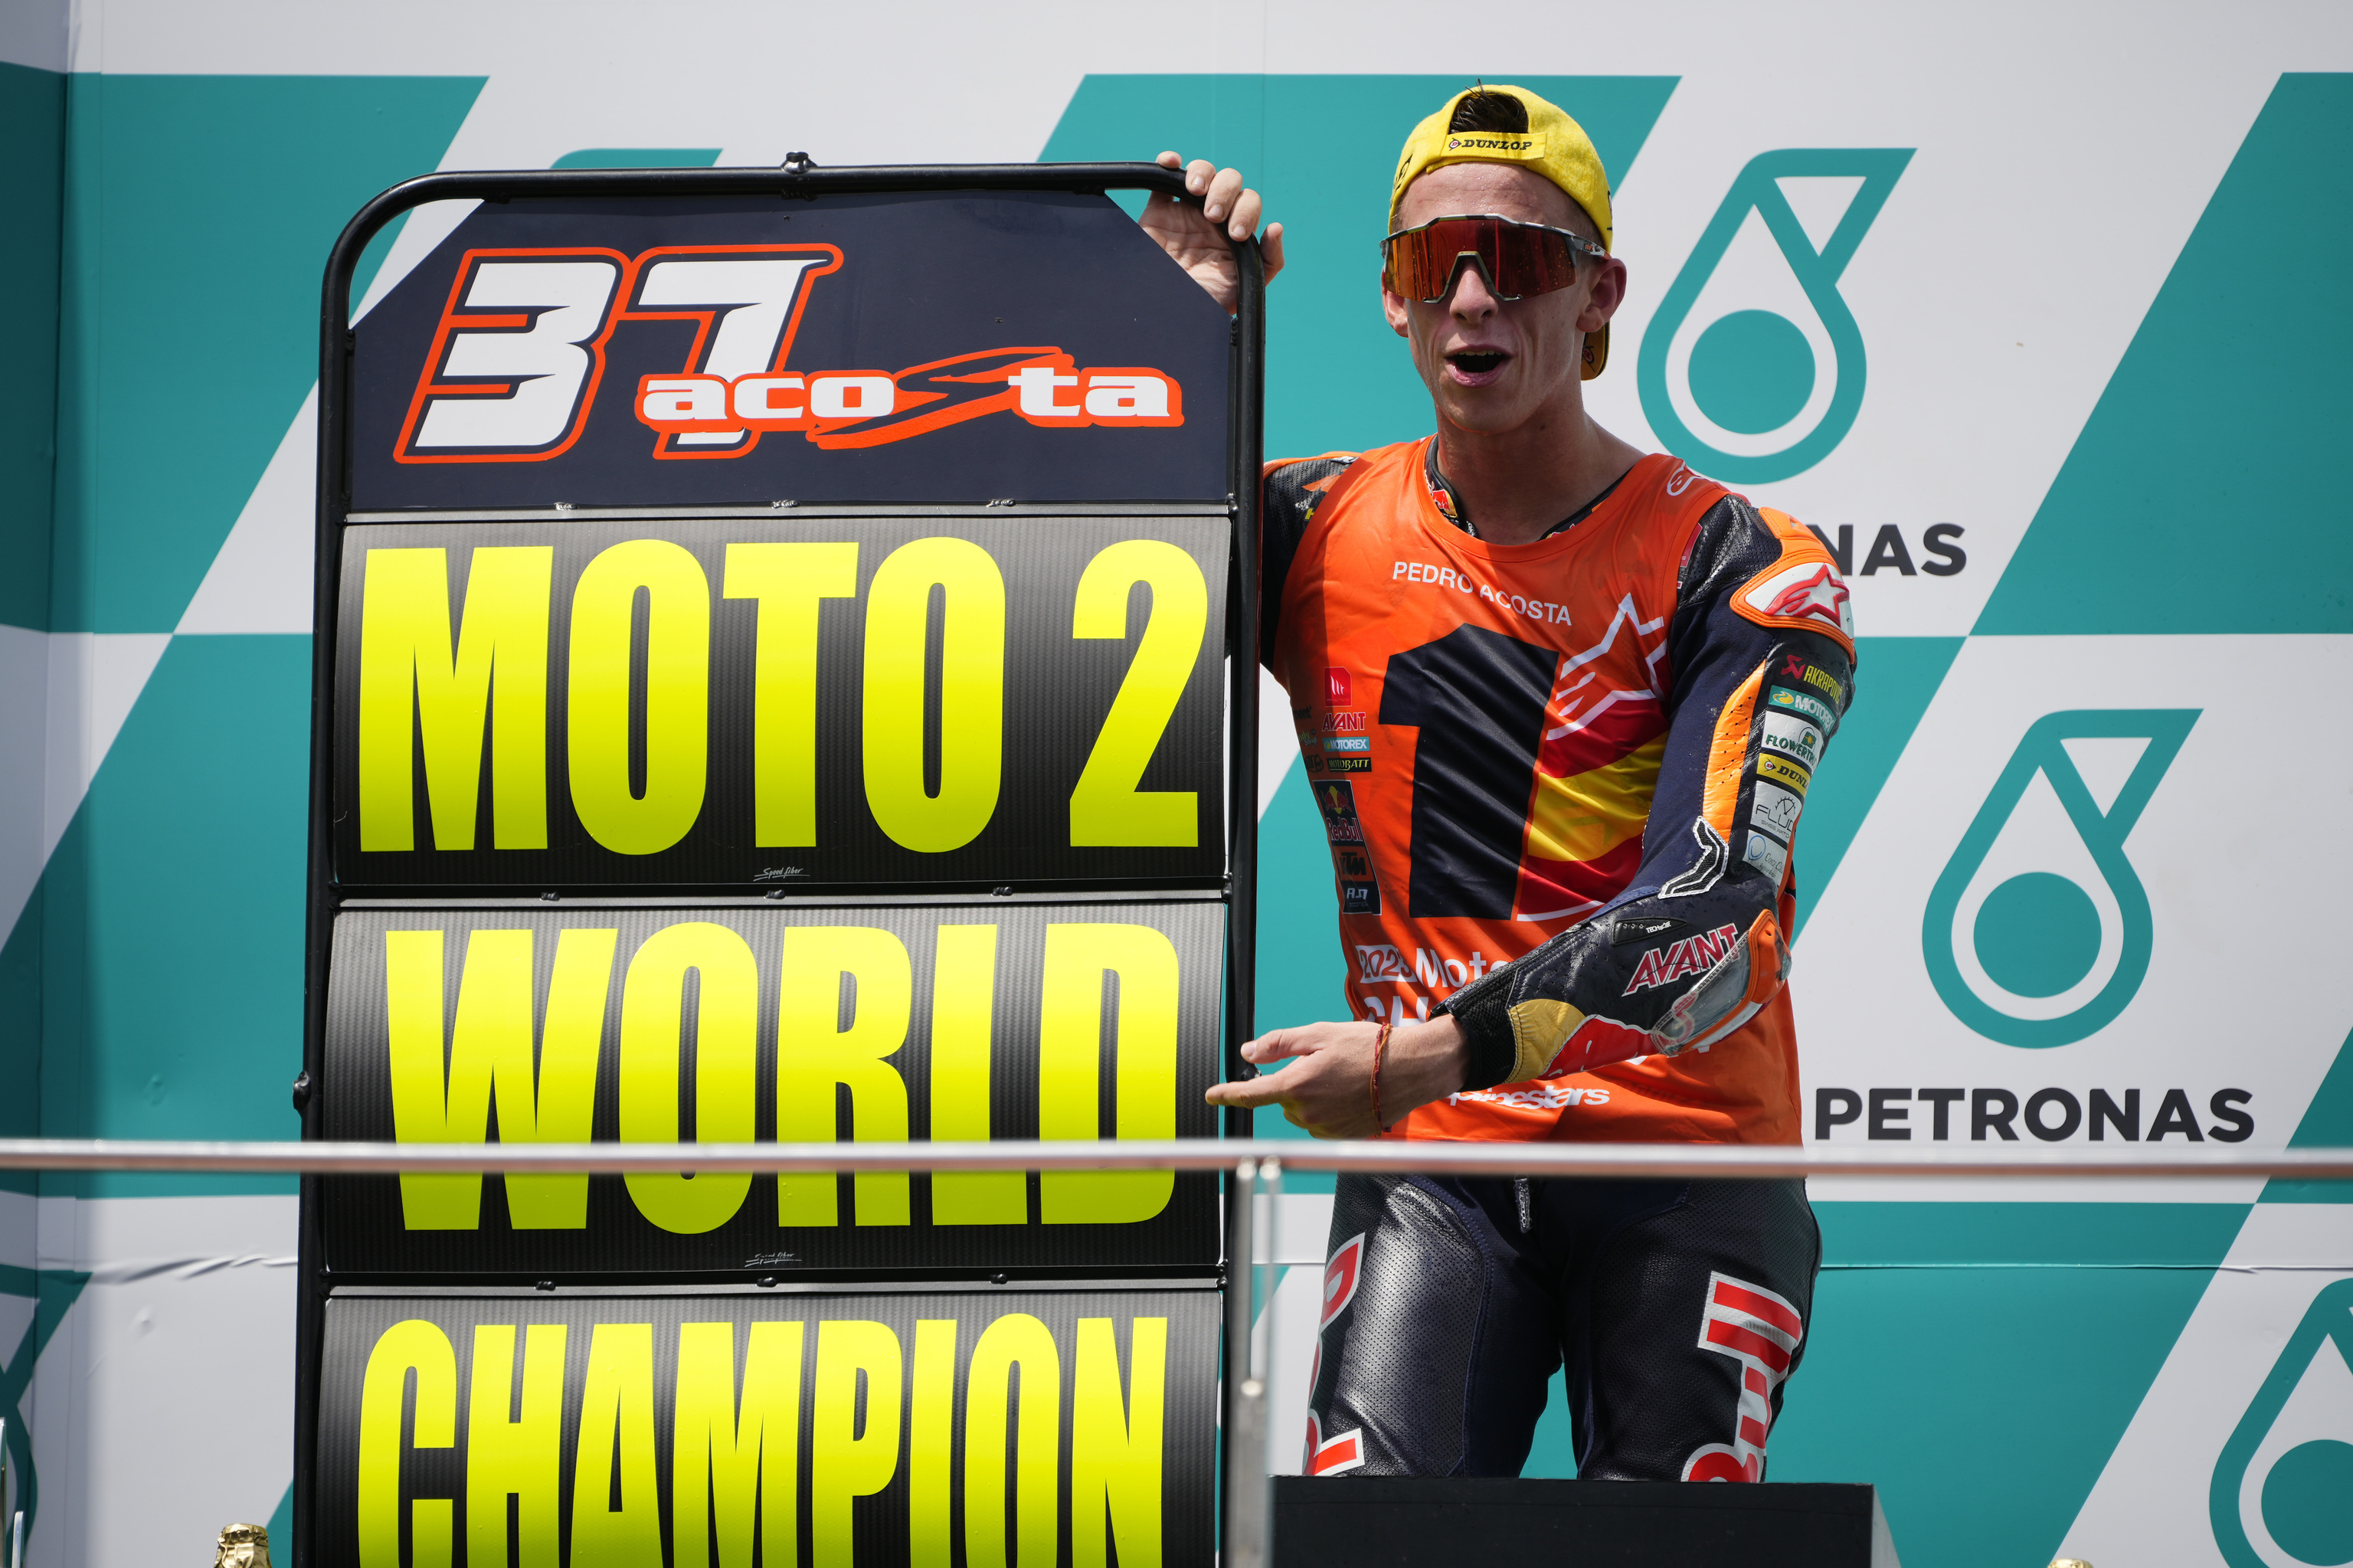 Pedro Acosta celebra el Mundial de Moto2 en el podio de Sepang.